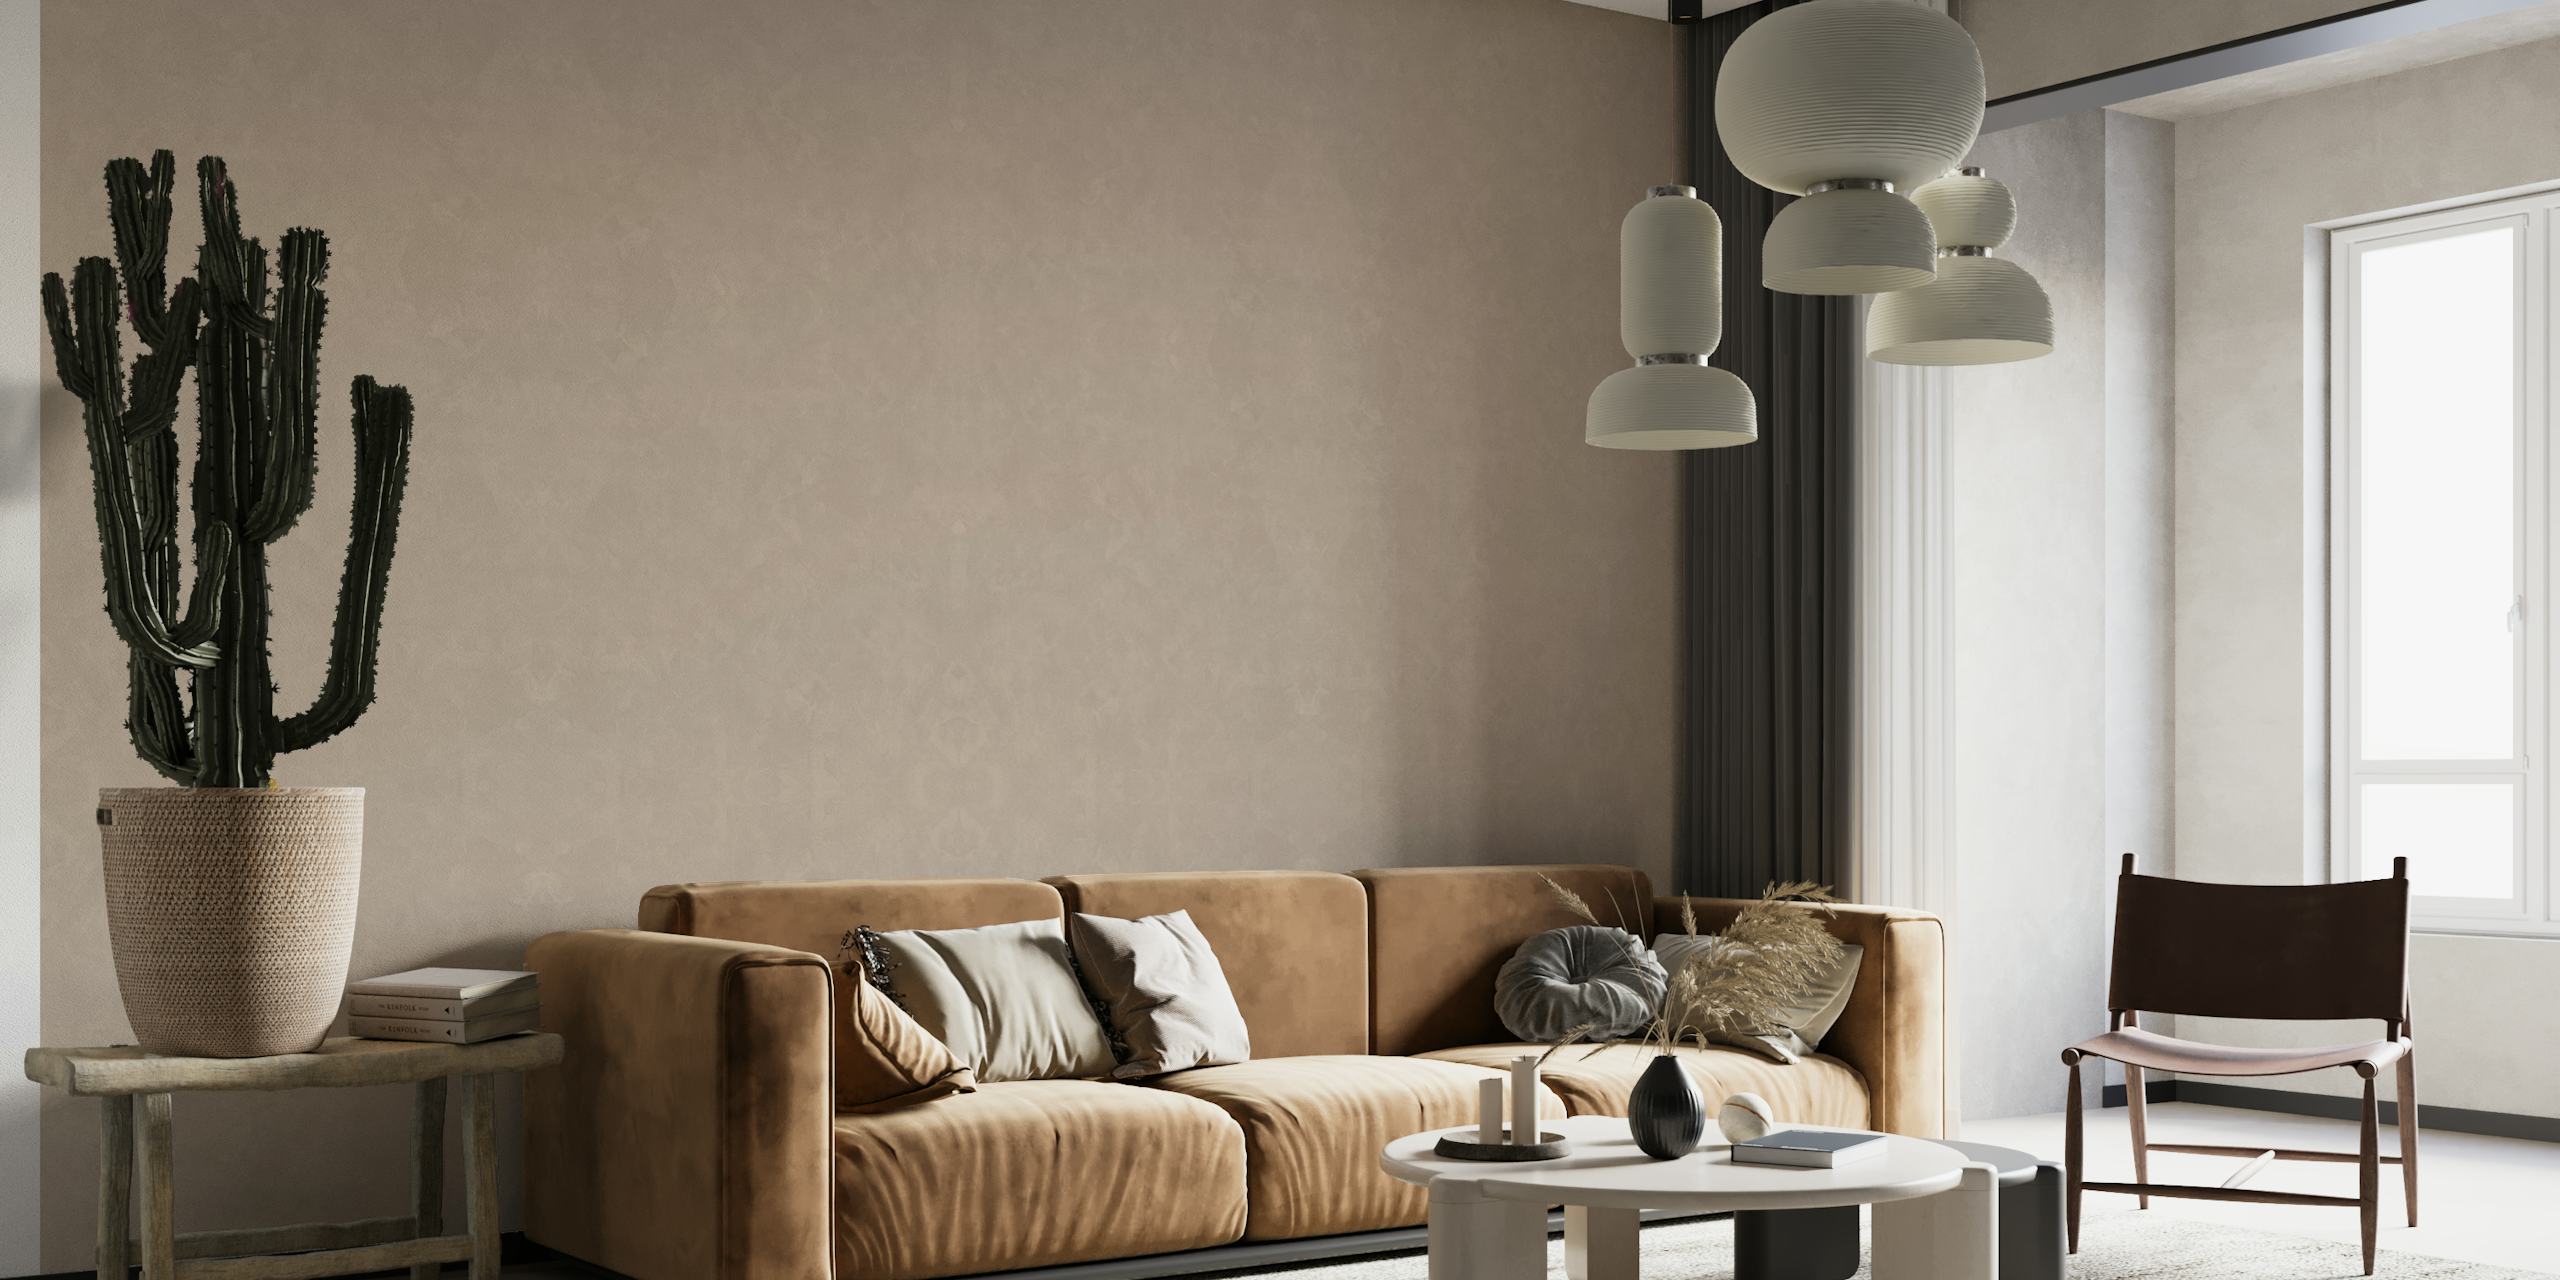 Apstraktni minimalistički Färger Colors 2 dizajn pozadine s nježnim nijansama